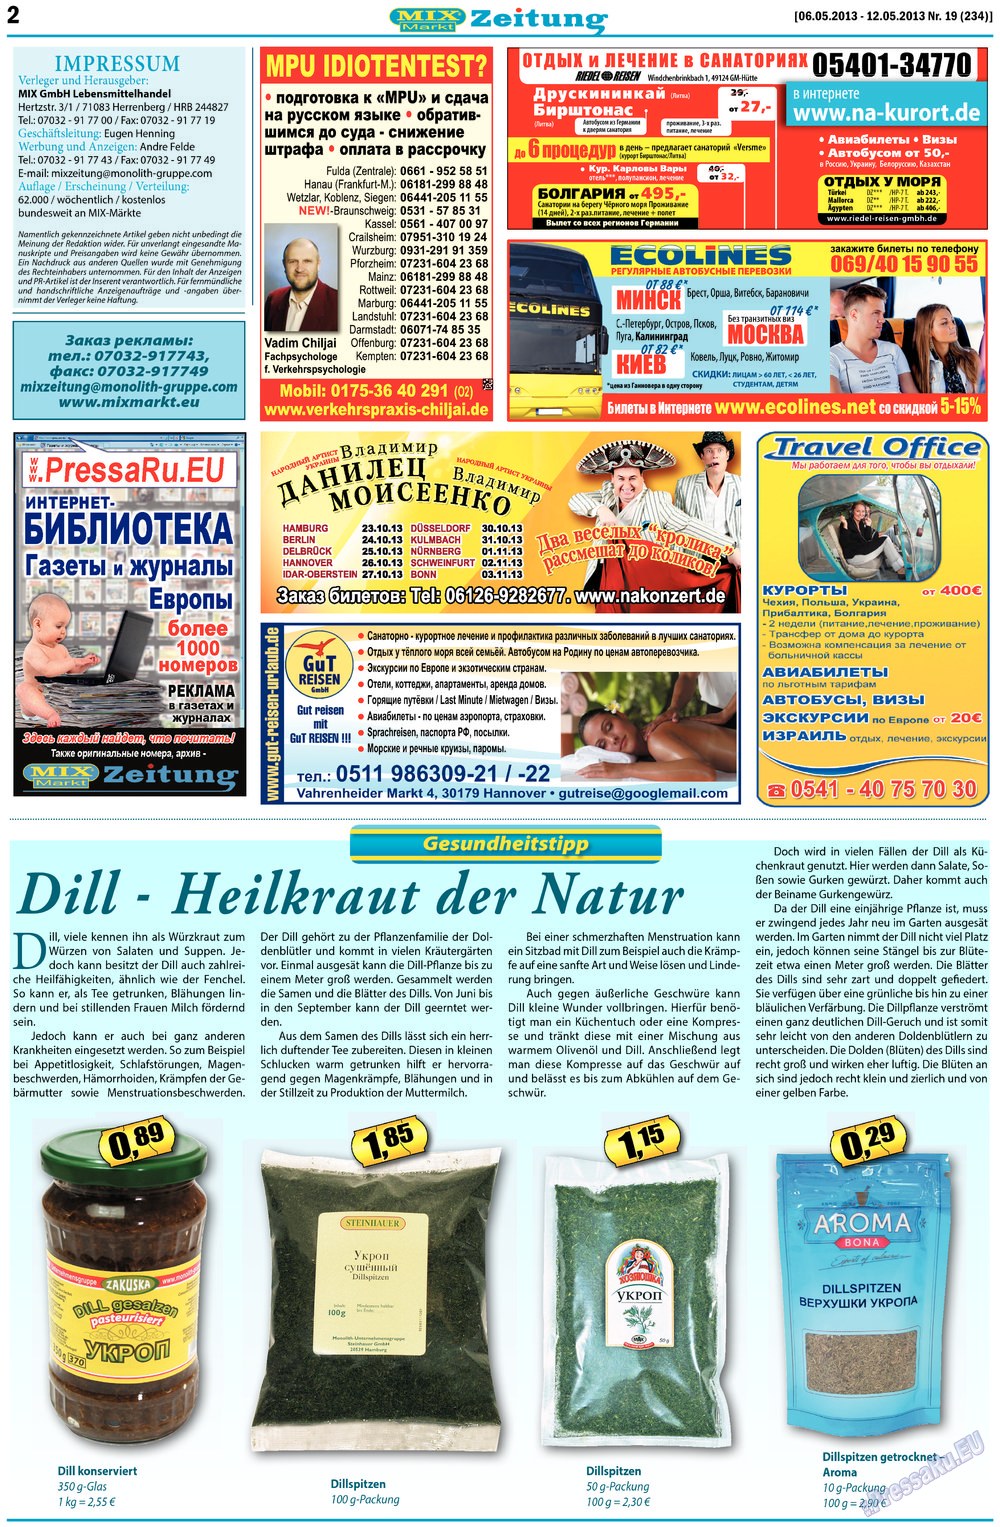 MIX-Markt Zeitung (газета). 2013 год, номер 19, стр. 2